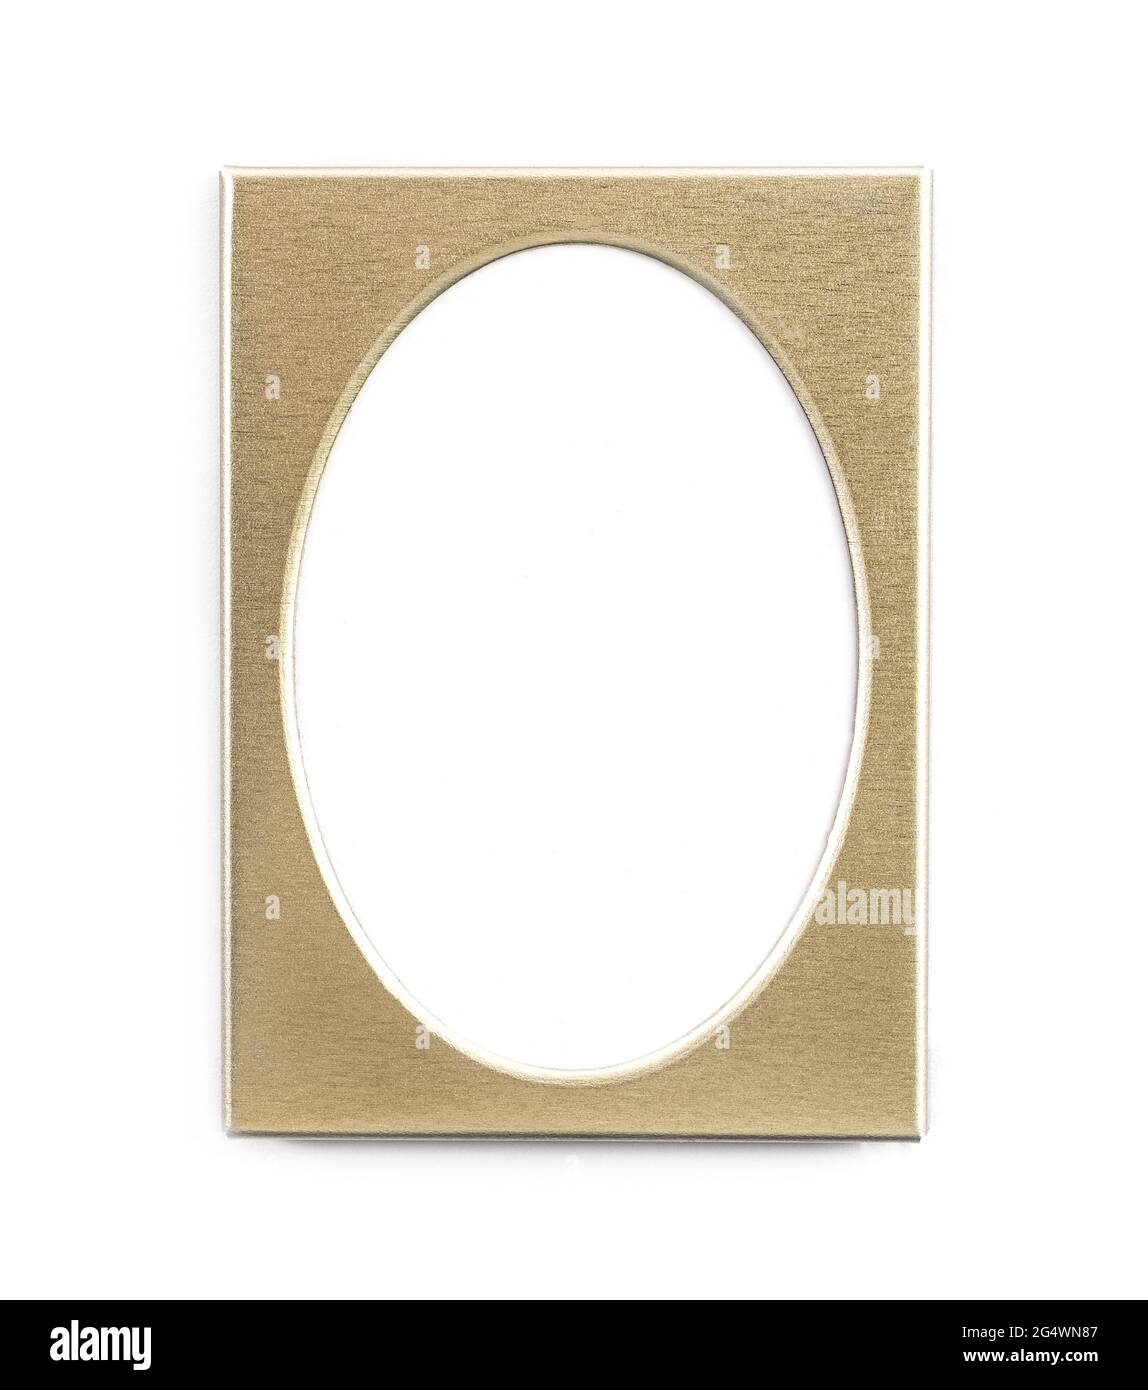 Cadre photo ovale doré vide isolé sur fond blanc Banque D'Images